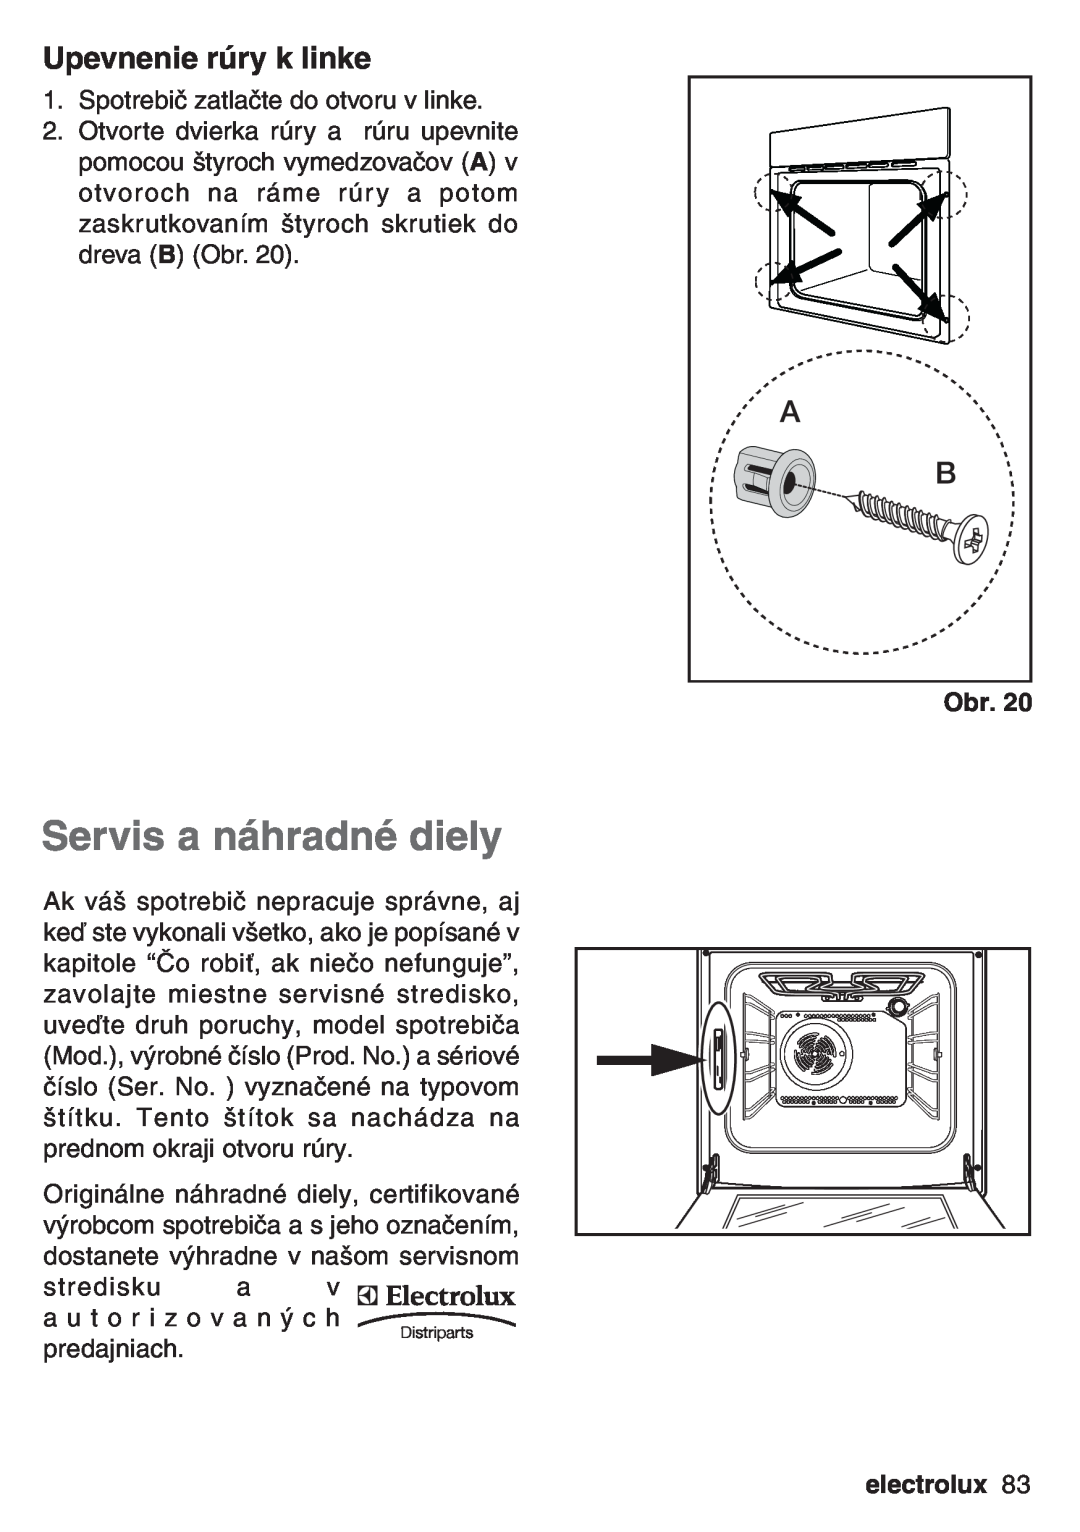 Electrolux EOB 53003 user manual Servis a náhradné diely, Upevnenie rúry k linke, electrolux 